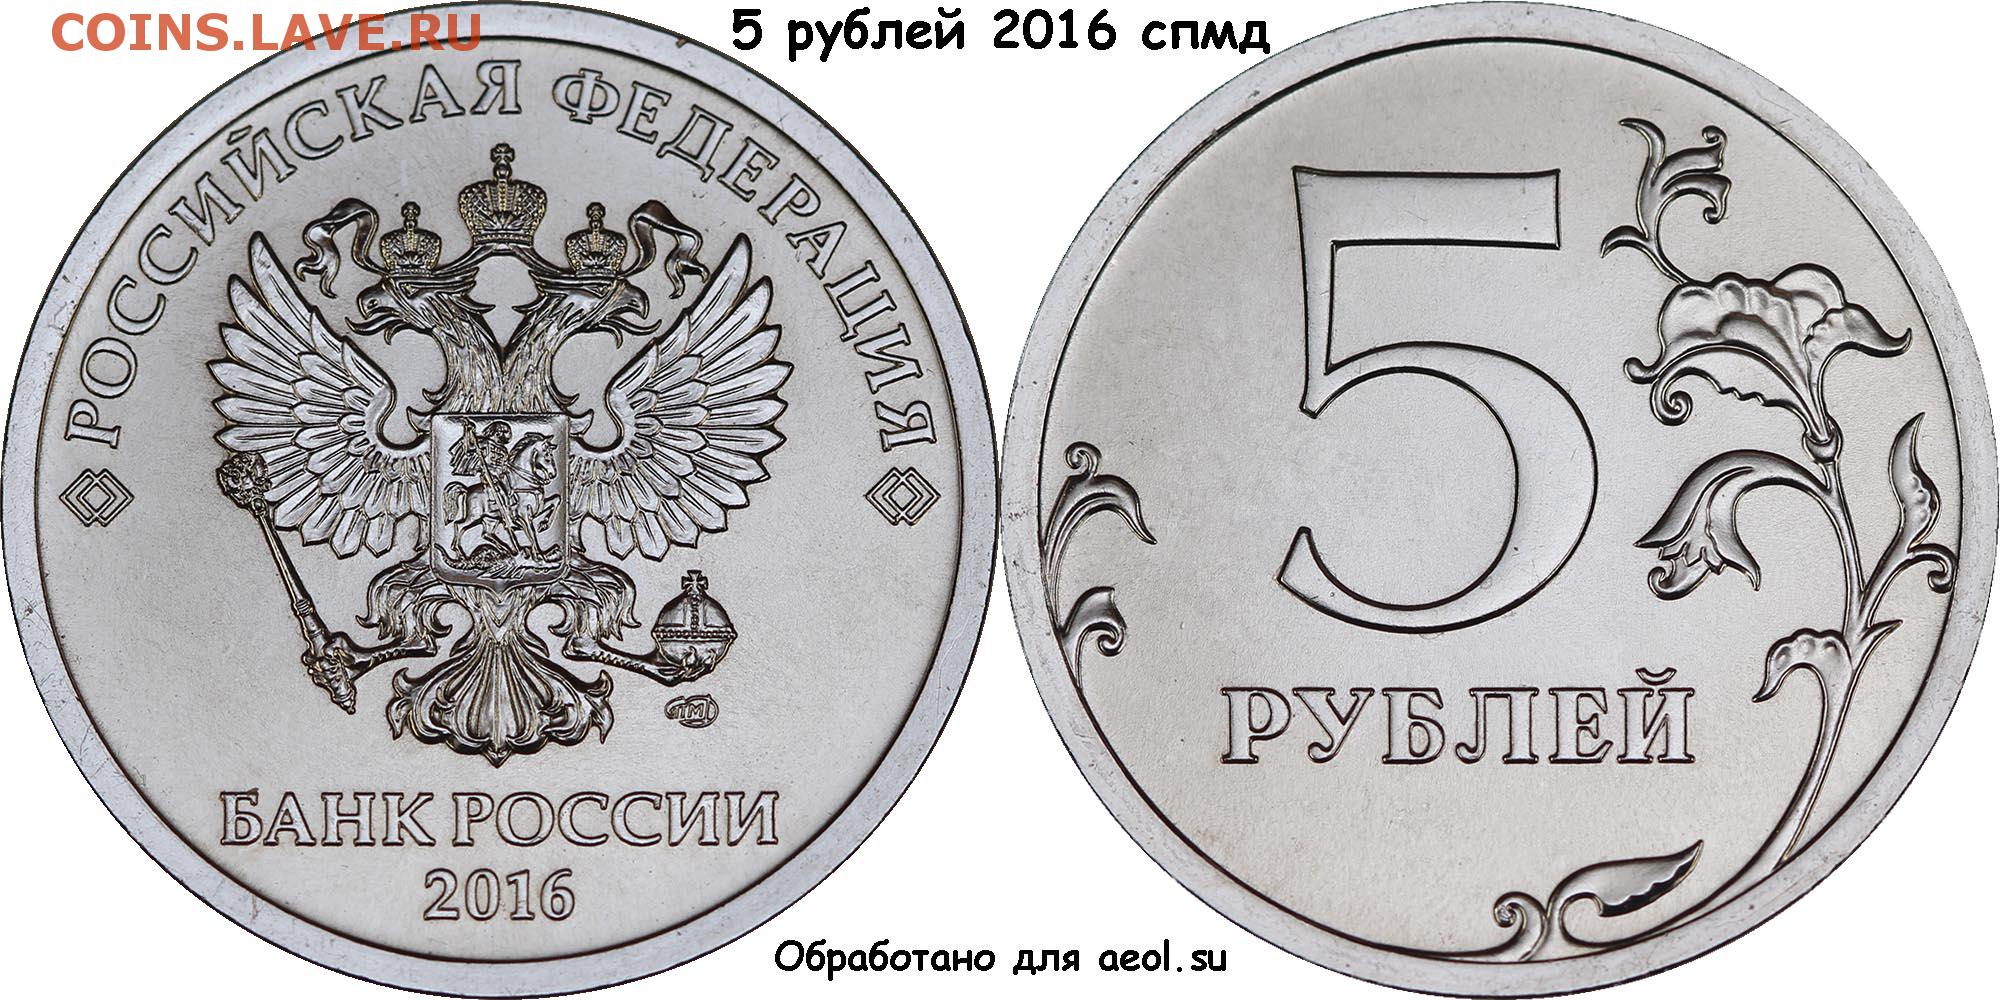 Рубль каневская. Монета 2 рубля 2016 года СПМД. 5 Рублей 2016 года СПМД. Монета 1 рубль реверс и Аверс. Монета 1 рубль 2016 года СПМД.